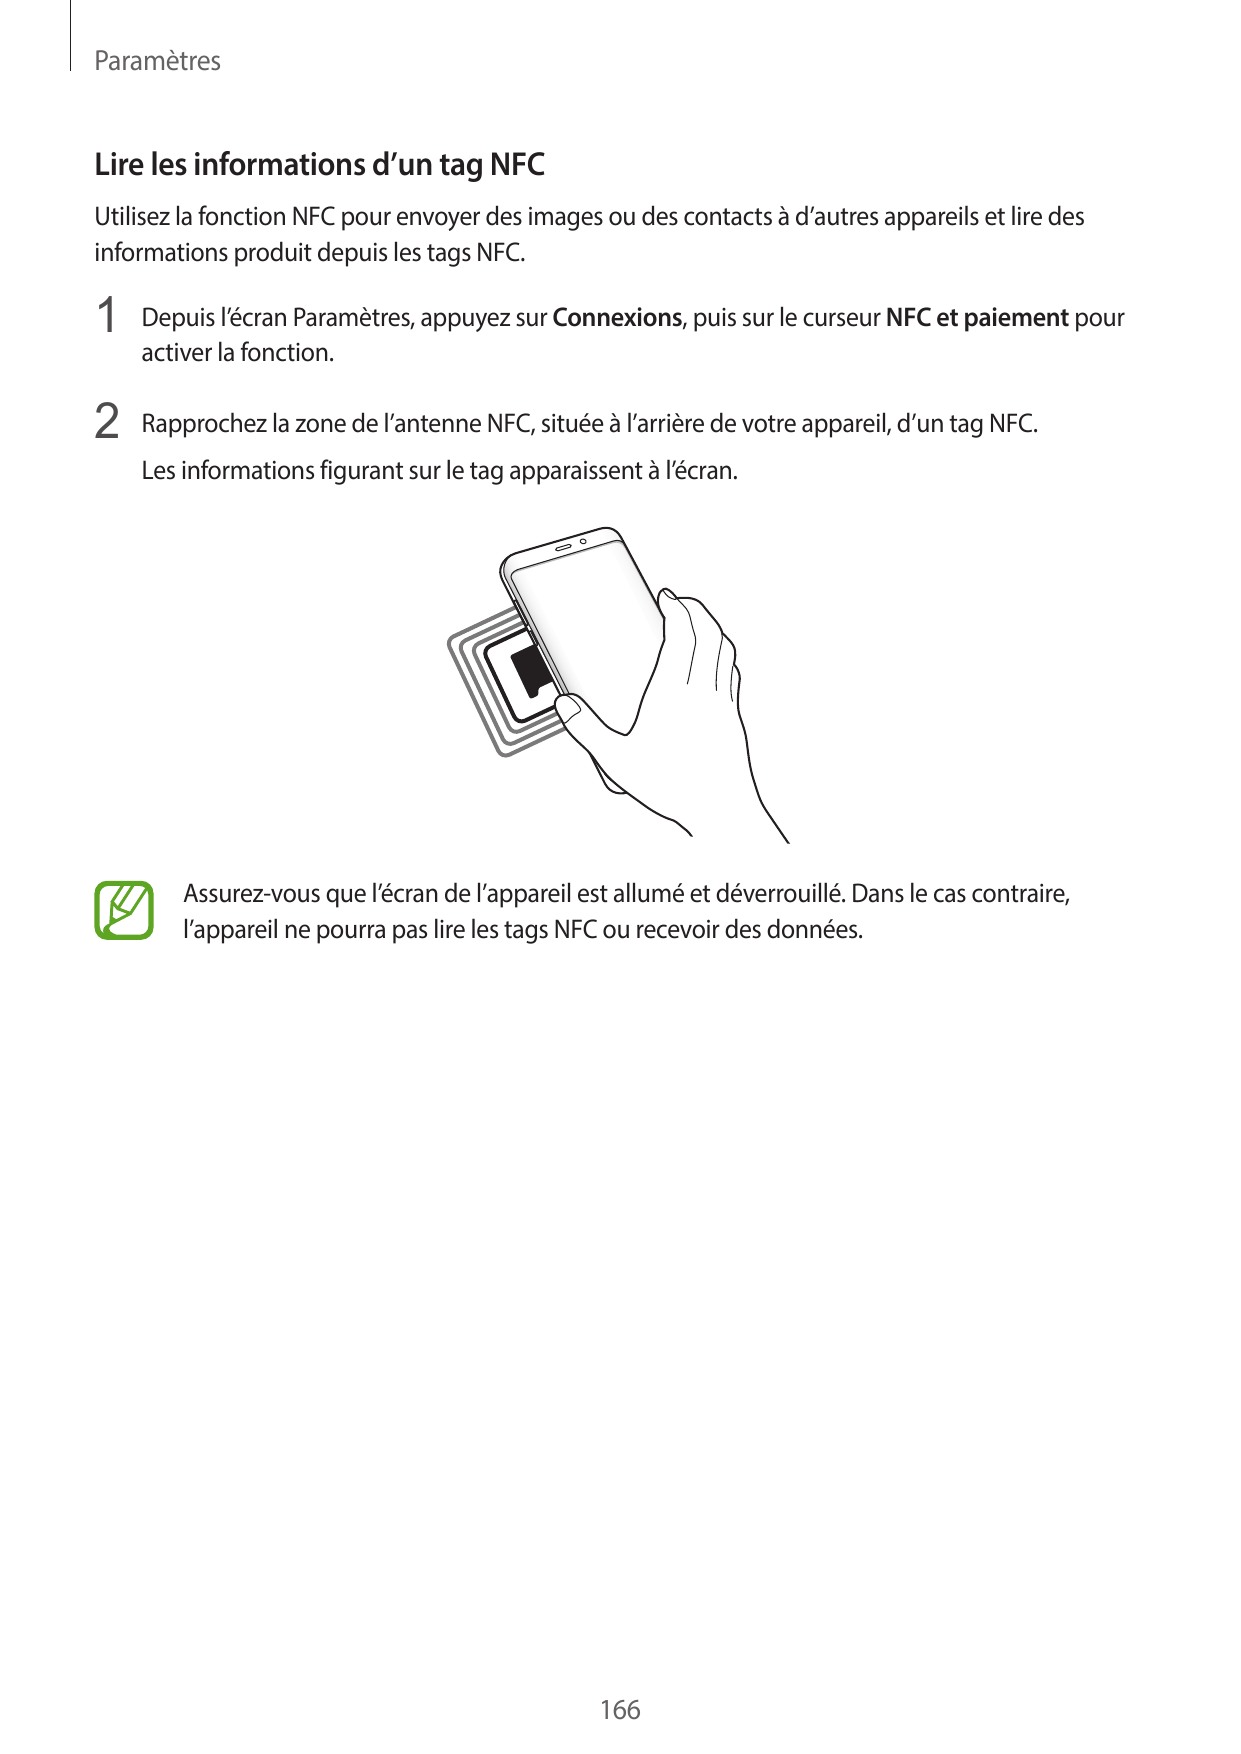 ParamètresLire les informations d’un tag NFCUtilisez la fonction NFC pour envoyer des images ou des contacts à d’autres appareil